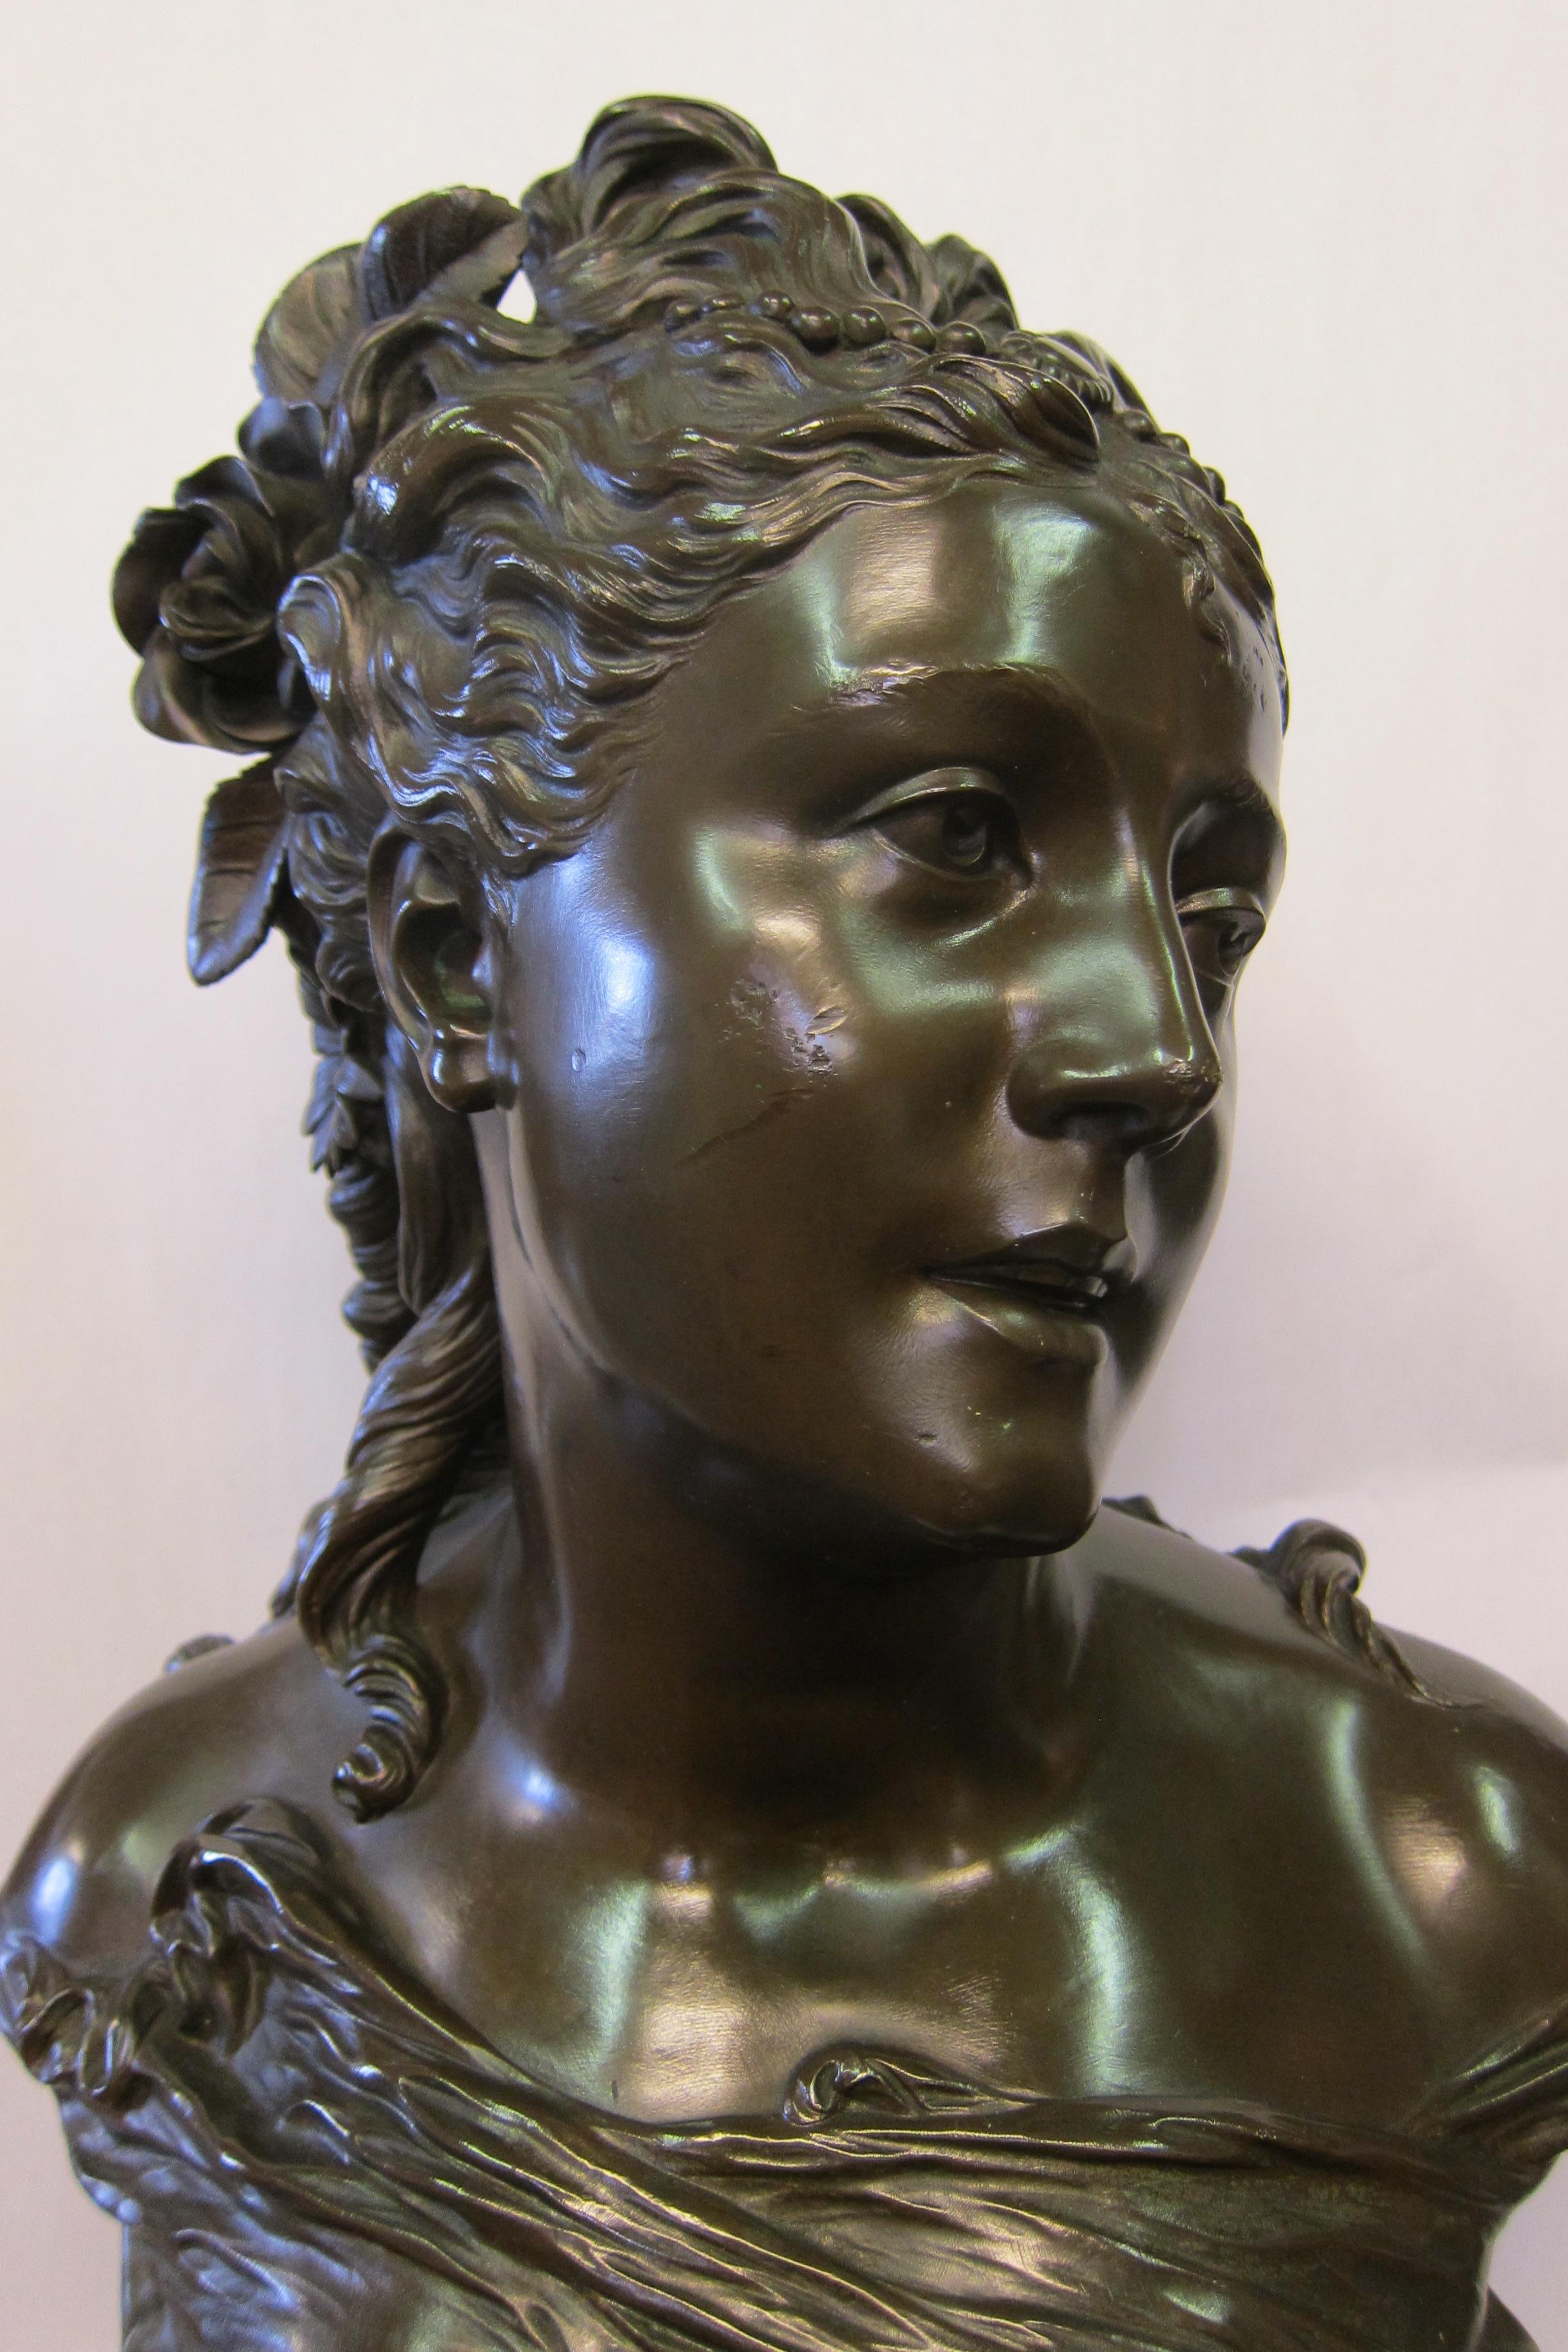 Cette sculpture vintage en bronze patiné, datant de 1890, représente un buste merveilleusement détaillé d'une belle dame parée de superbes fleurs dans ses cheveux. L'artiste, Pierre Louis Detrier (1822-1897), met en valeur son sujet avec des détails